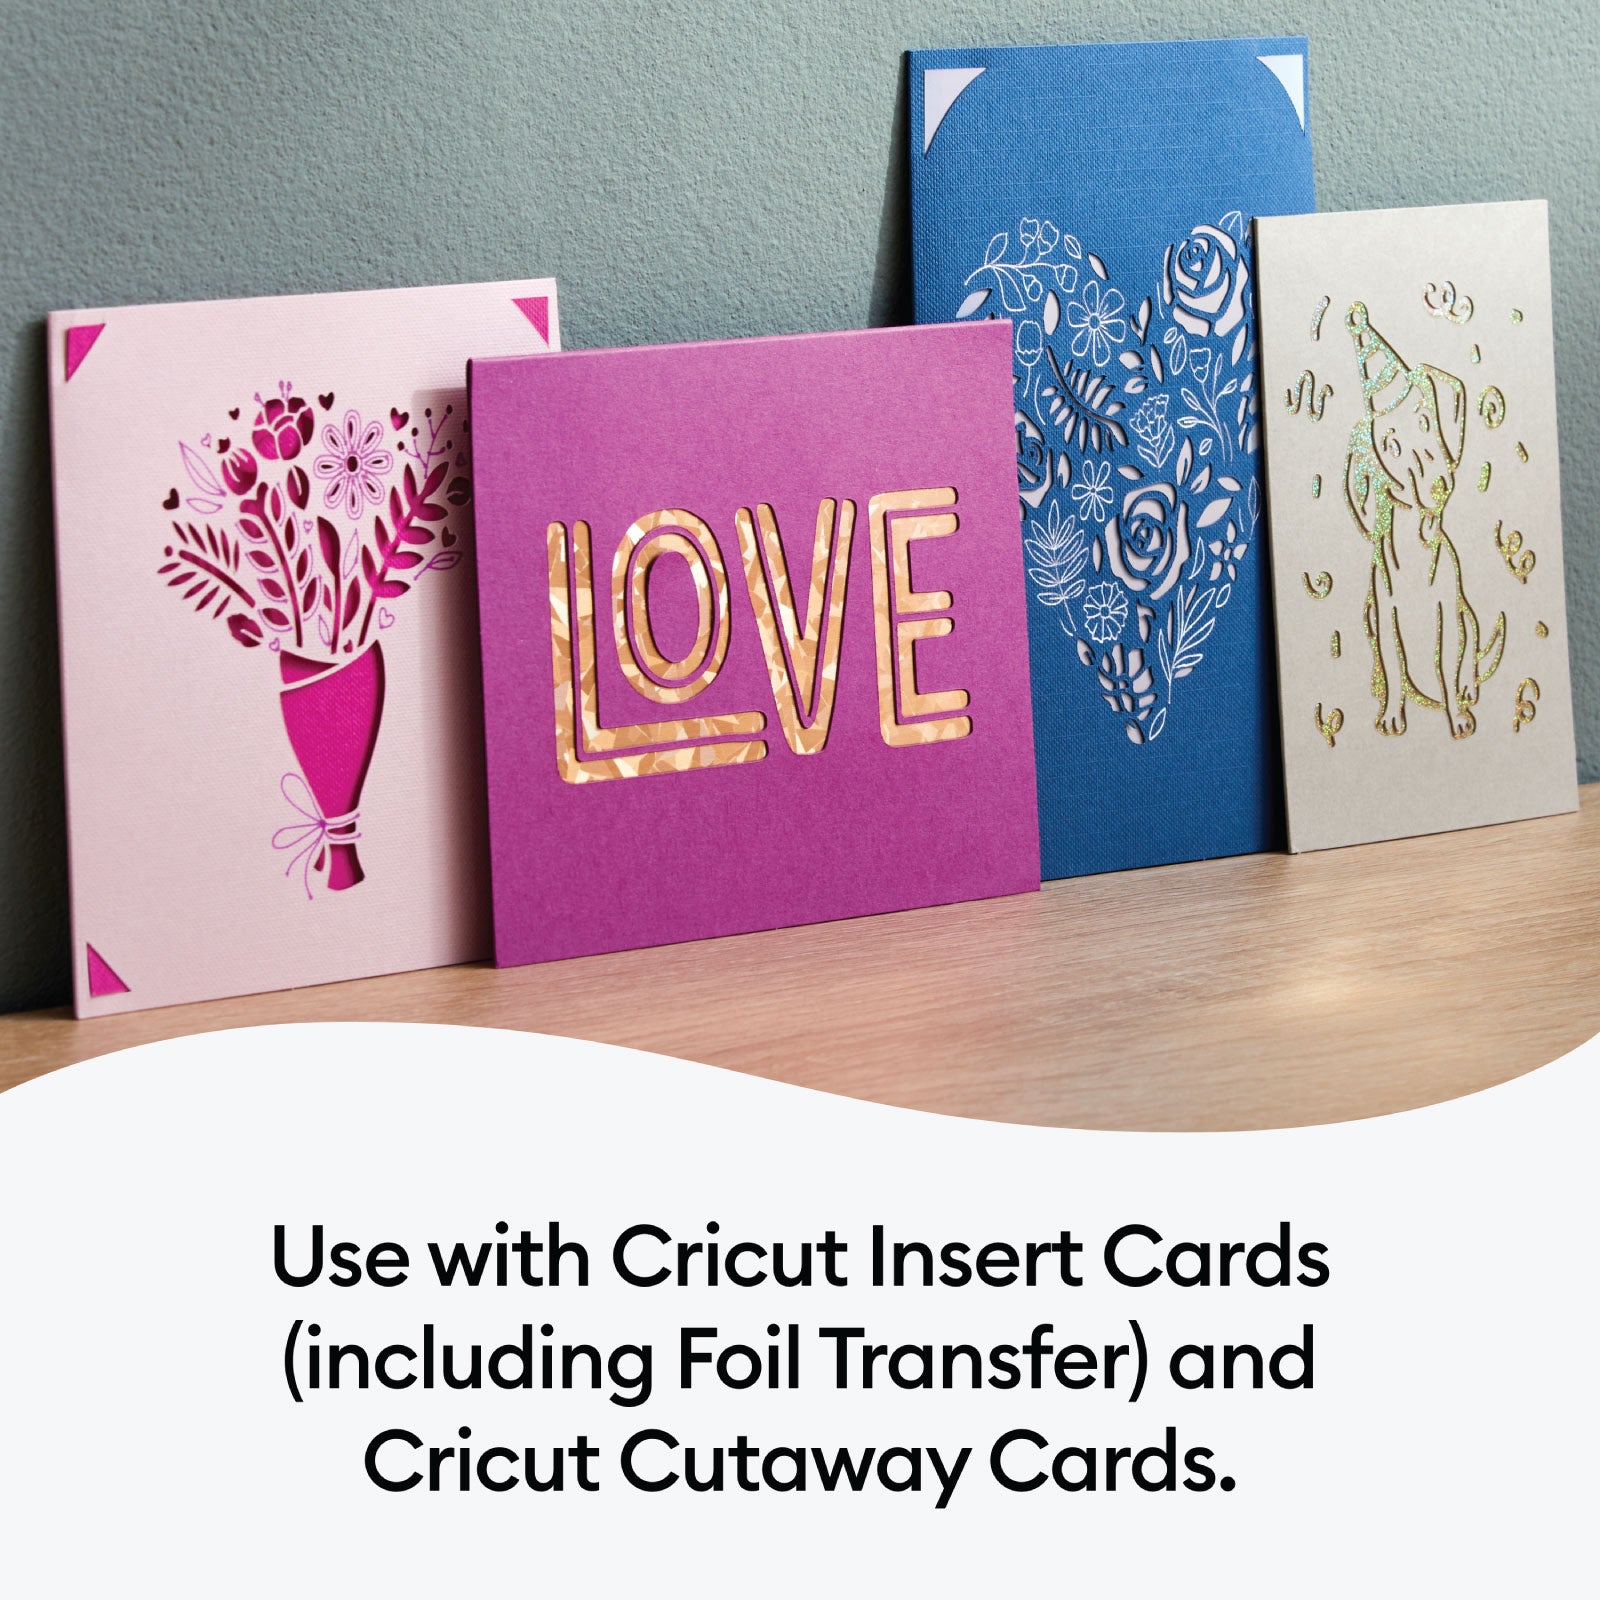 Cricut Cutaway Cards Spring Rain Sampler Double Pack with Cricut Card Mat 2x2 Bundle